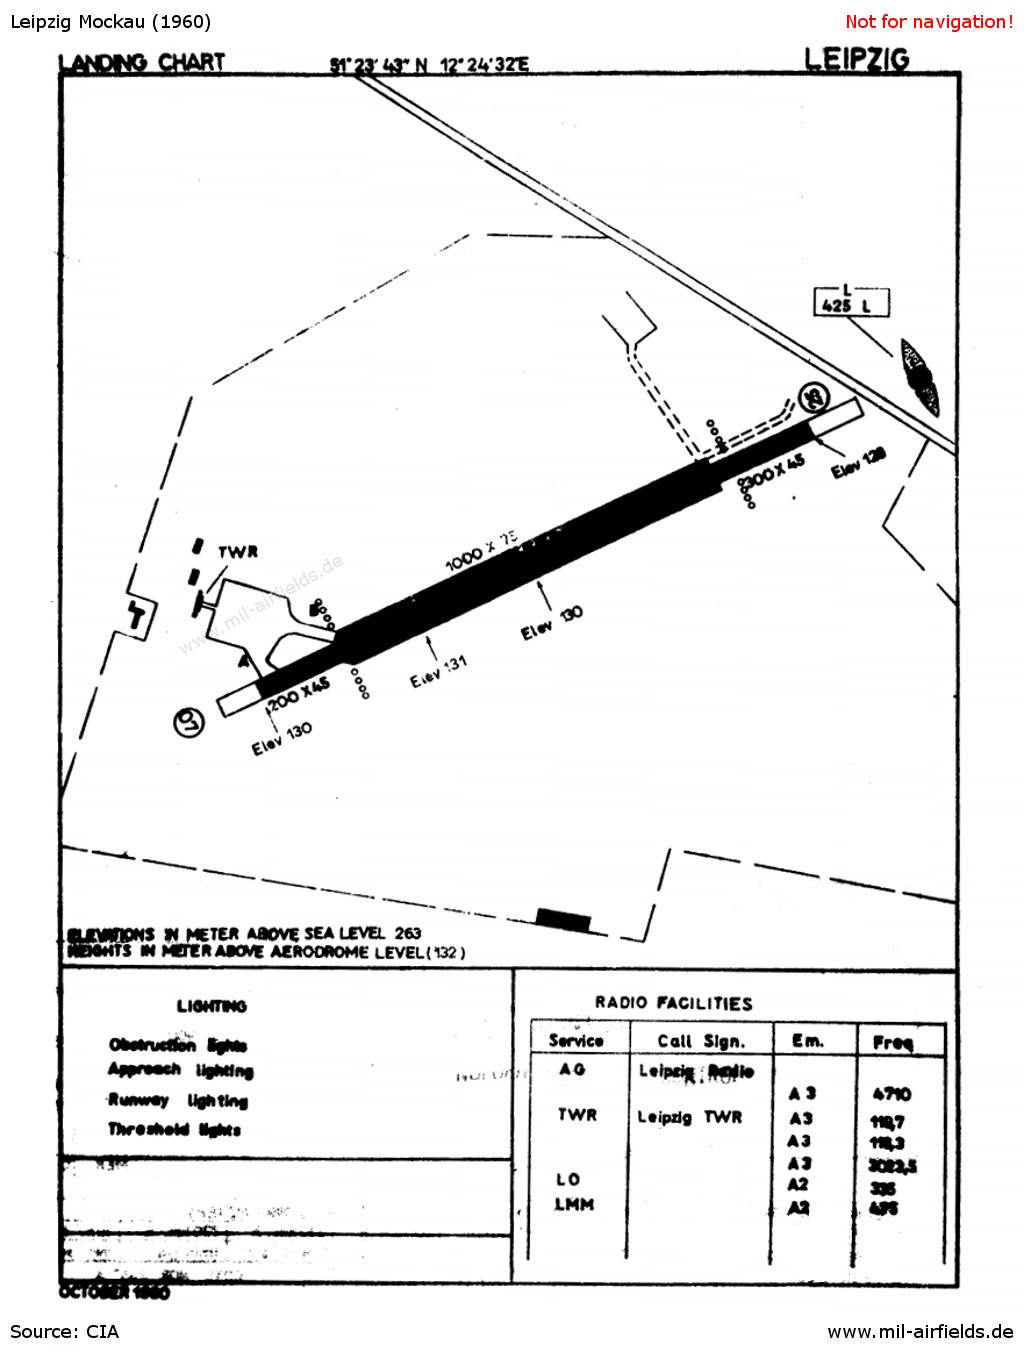 Karte des Flughafens Leipzig-Mockau aus dem Jahr 1960